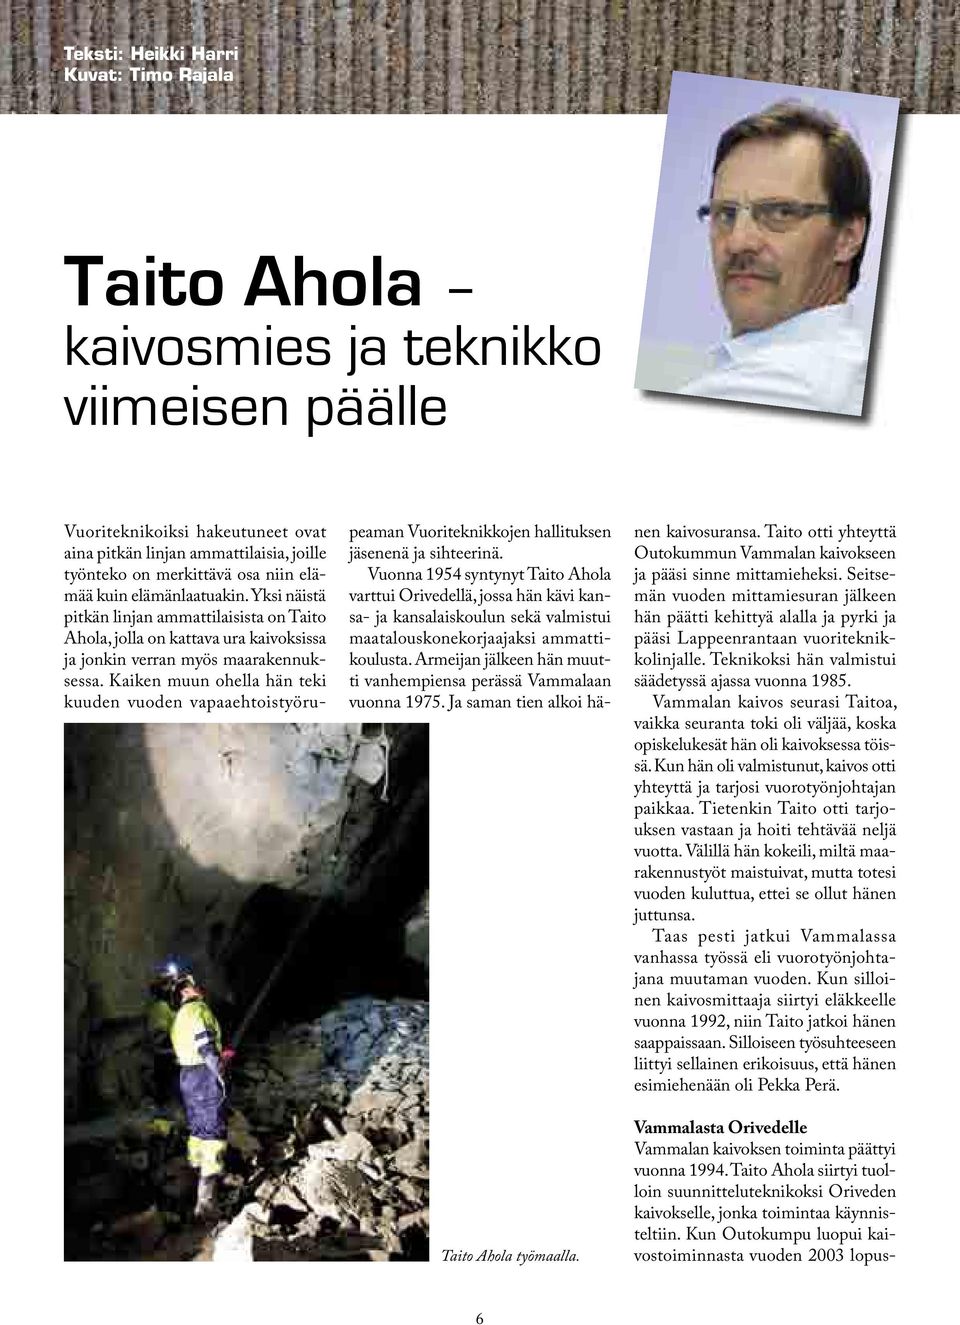 Yksi näistä pitkän linjan ammattilaisista on Taito Ahola, jolla on kattava ura kaivoksissa ja jonkin verran myös maarakennuksessa.